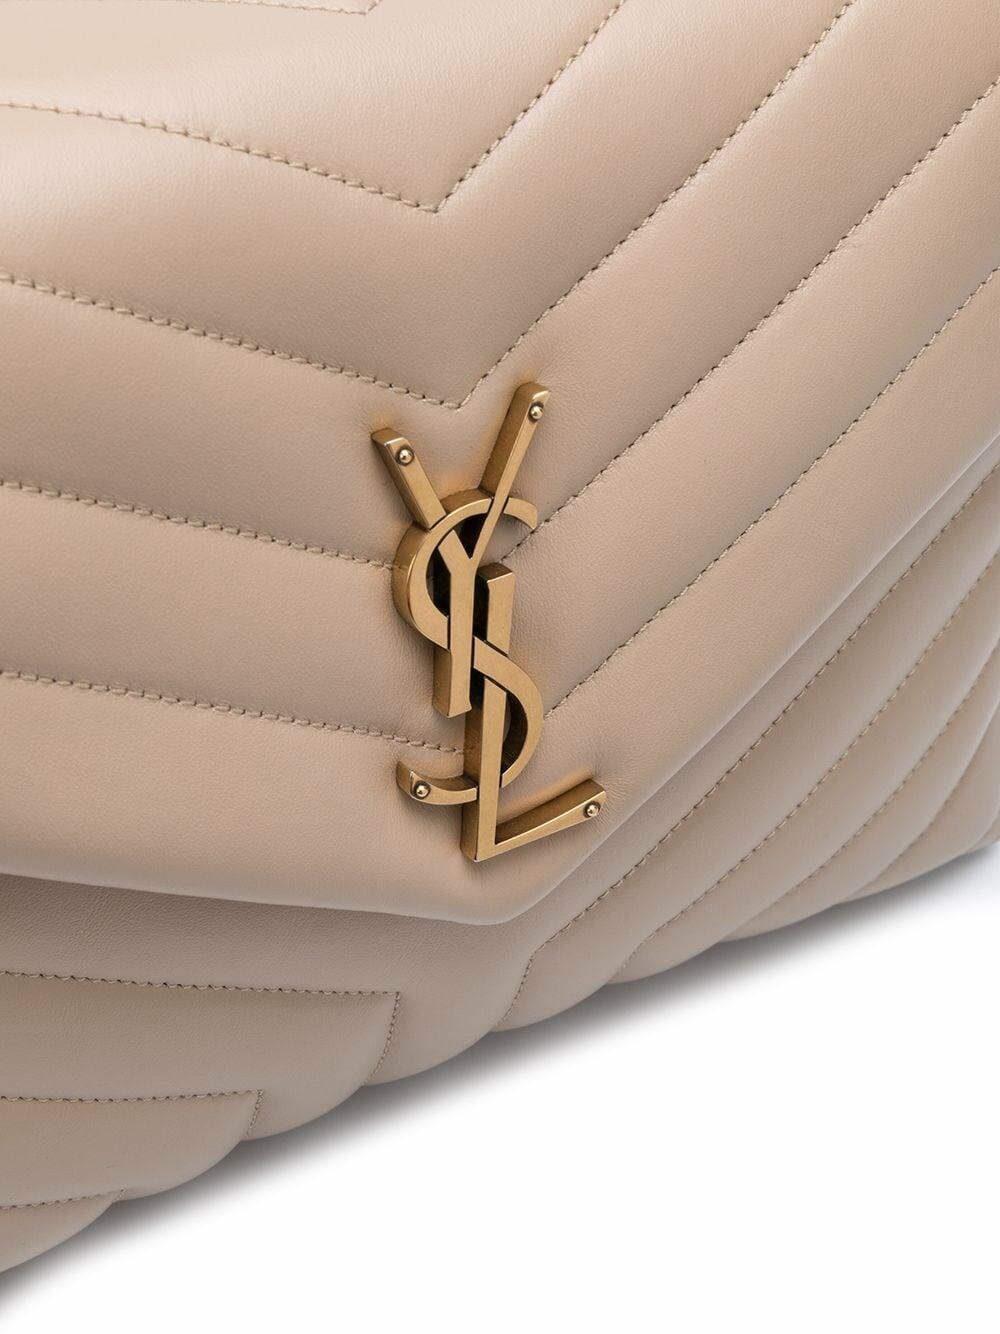 Louis Vuitton Denim Monogram Leather Gold Chain Crossbody Flap Shoulder Bag